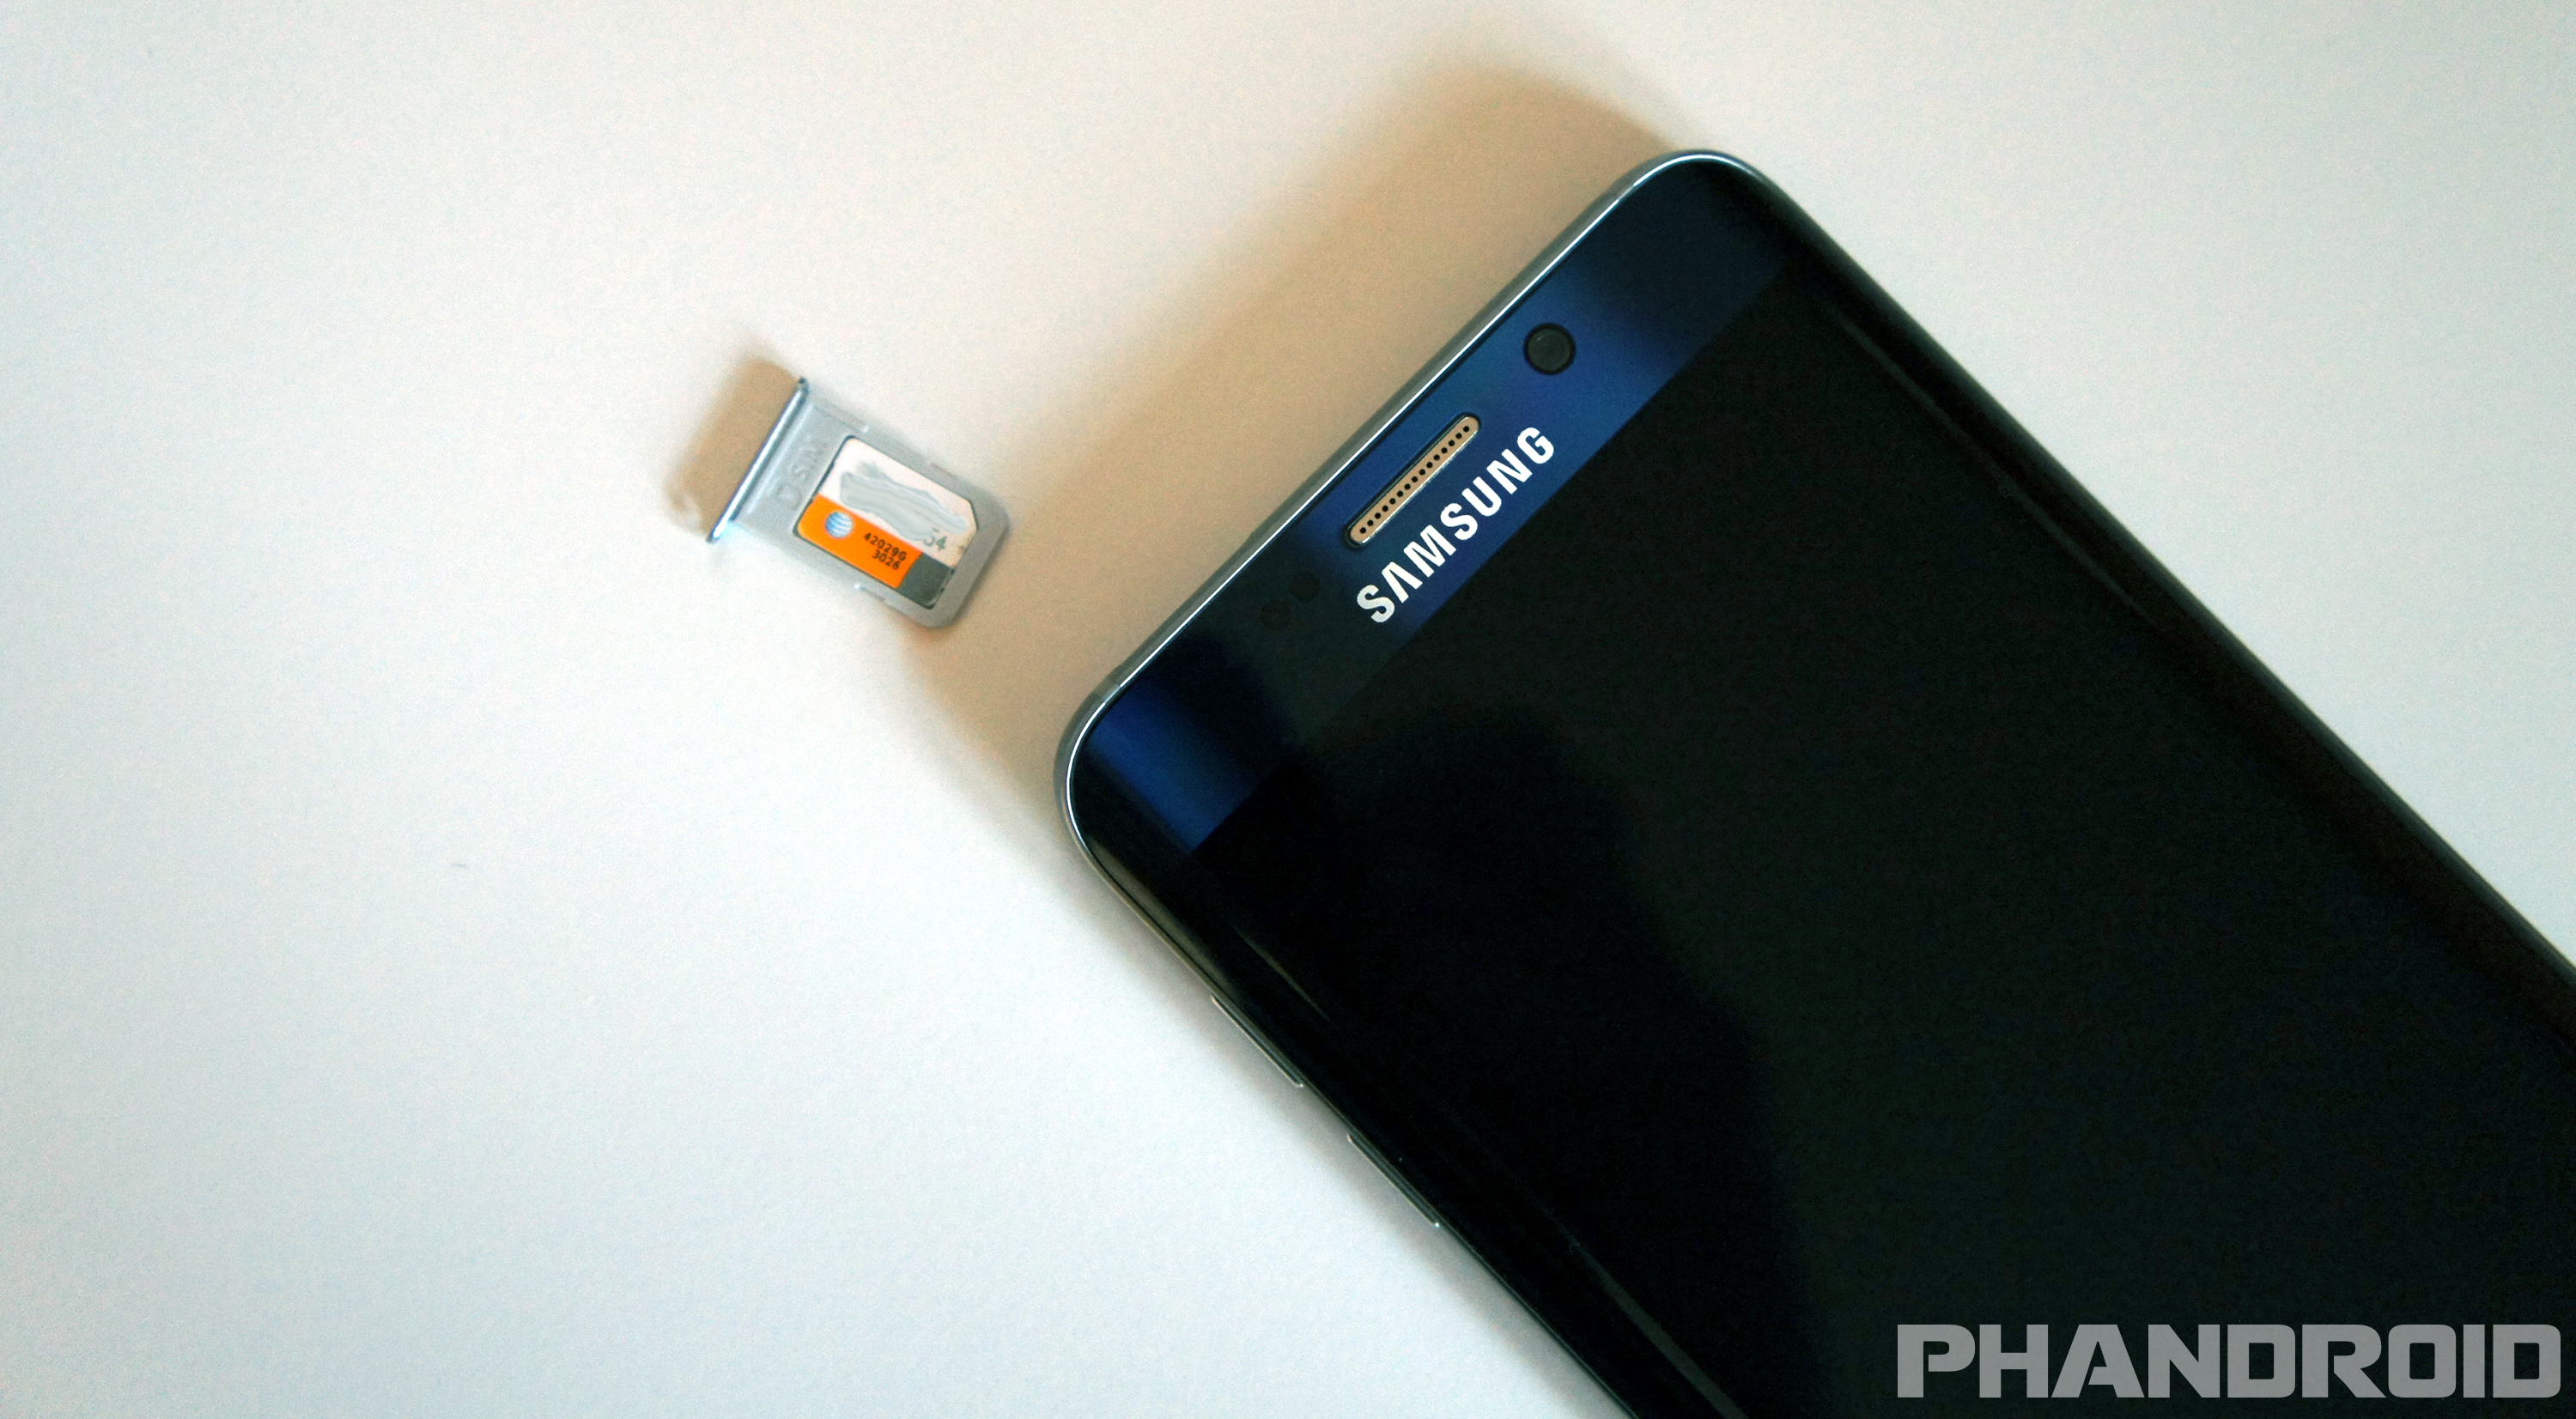 Ontoegankelijk Schotel Voorbeeld How to SIM unlock the Samsung Galaxy S6, Galaxy S6 edge – Phandroid